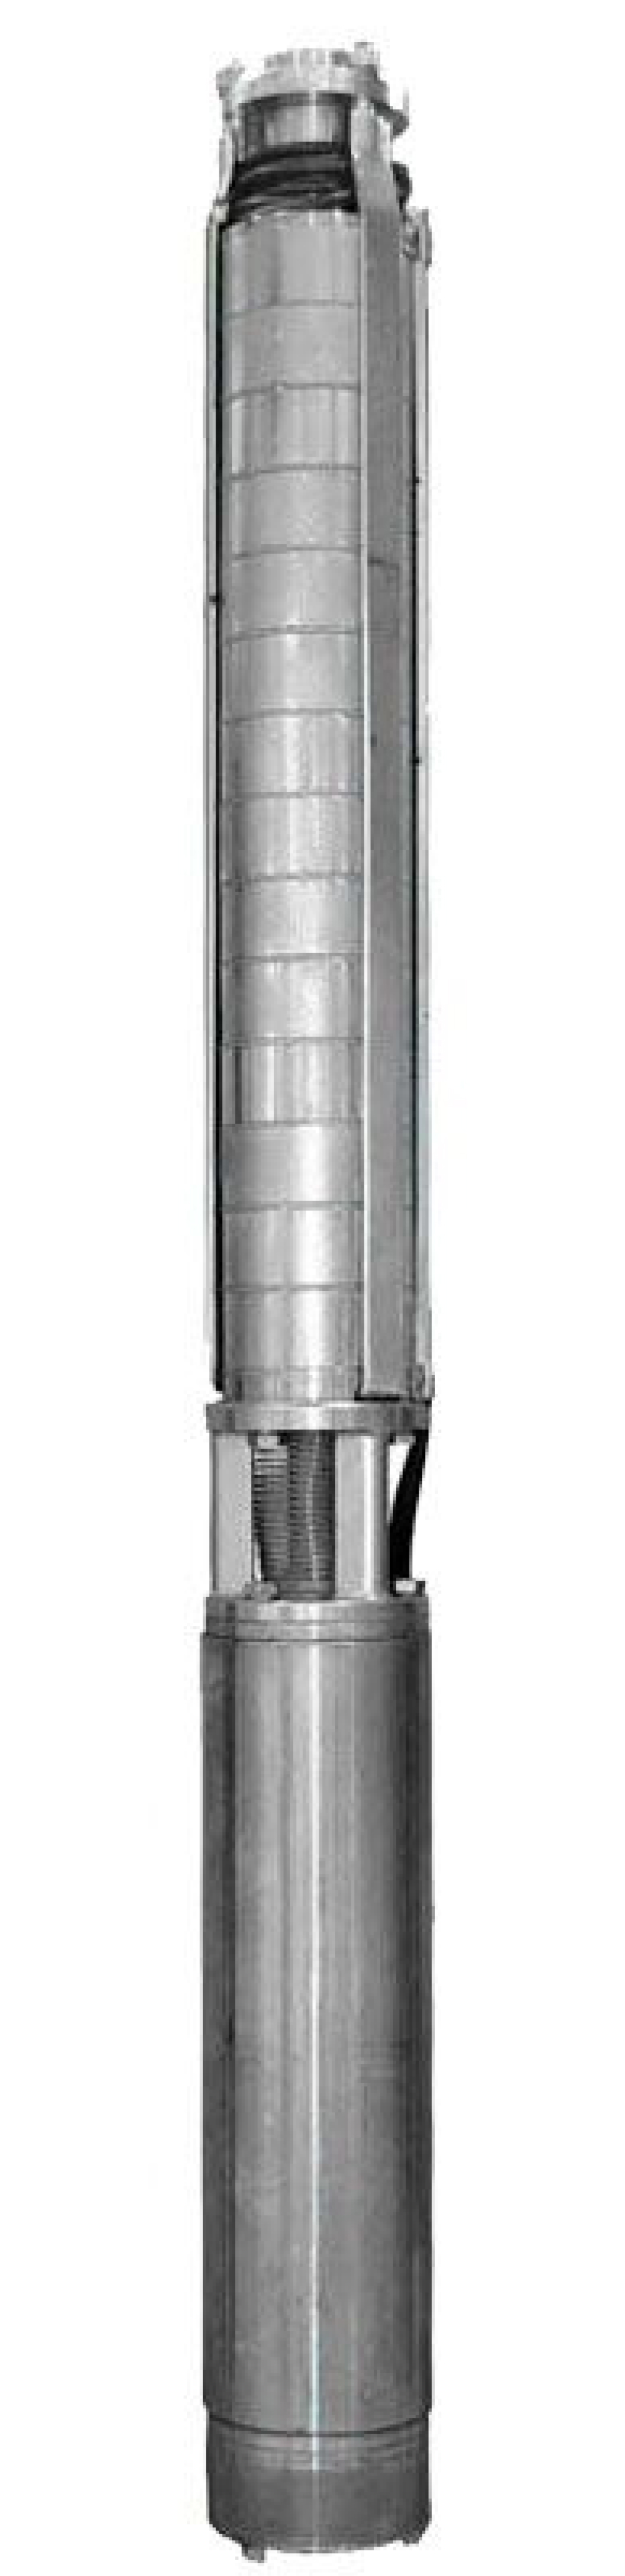 Насос скважинный Ливнынасос ЭЦВ 4-10-85 центробежный, производительность 10 м3/час, напор 85 м, мощность 5 кВт, напряжение трехфазной сети 380В